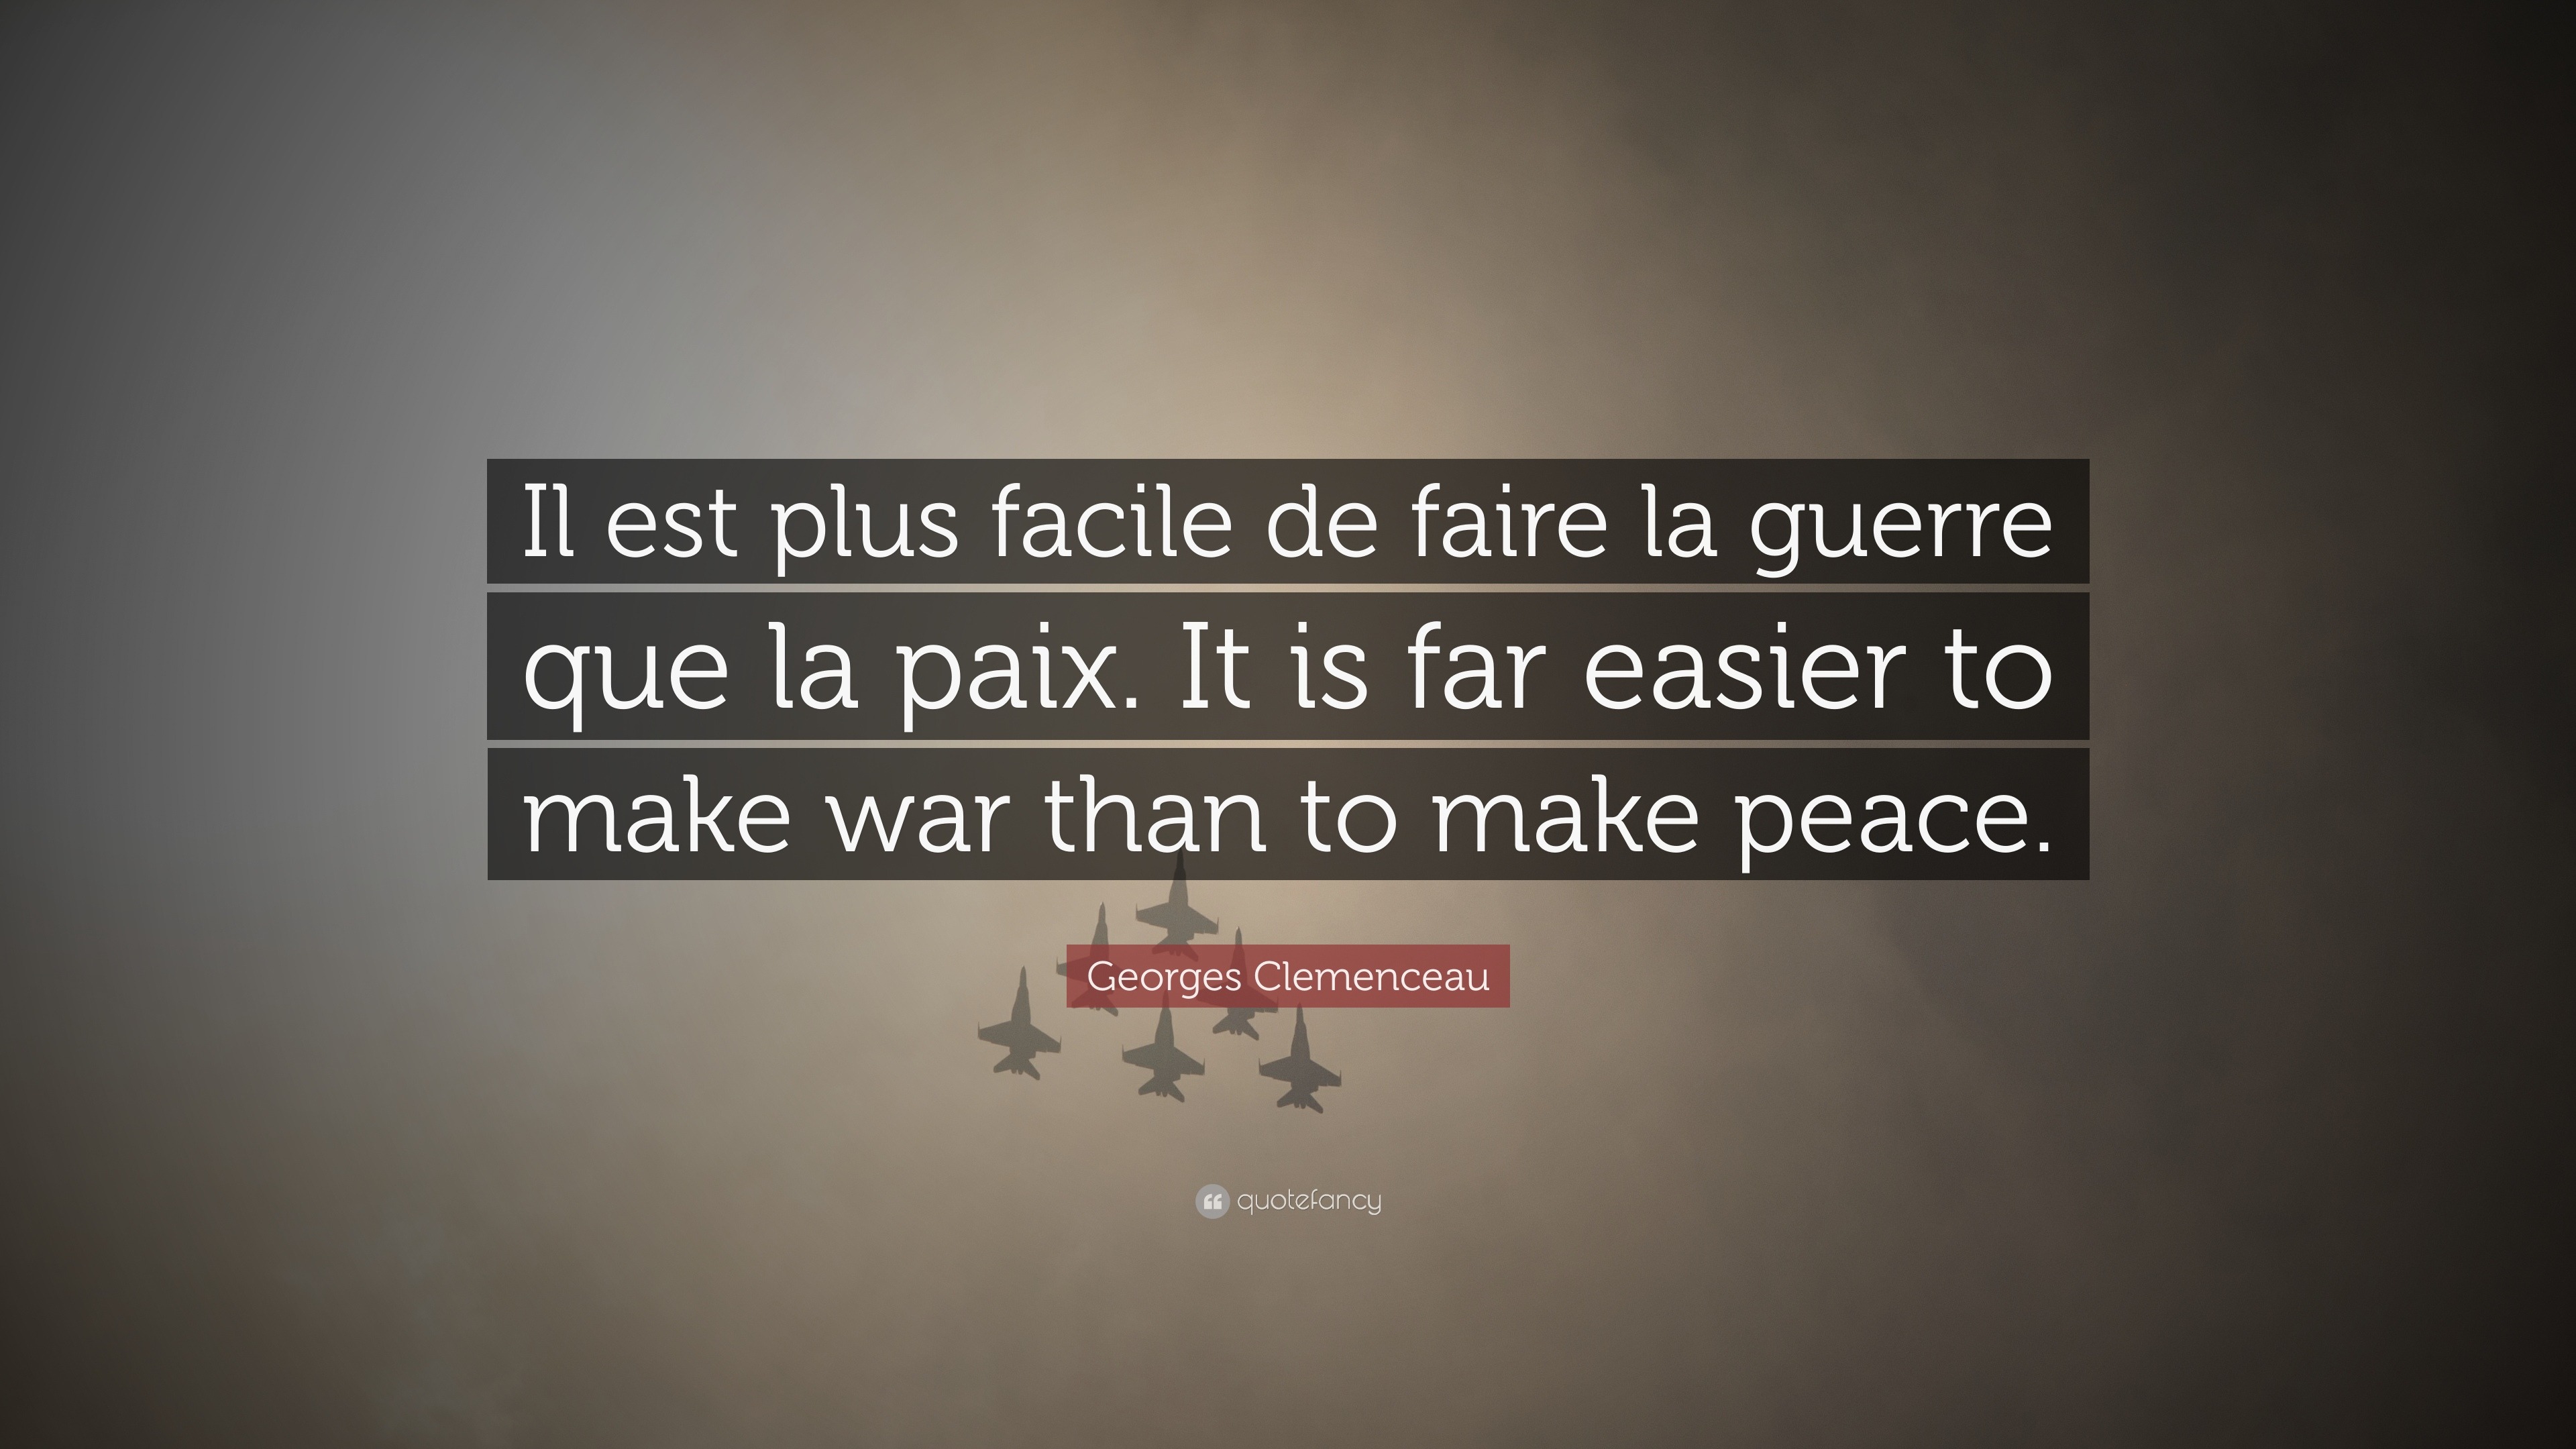 Georges Clemenceau Quote: “Il est plus facile de faire la guerre que la  paix. It is